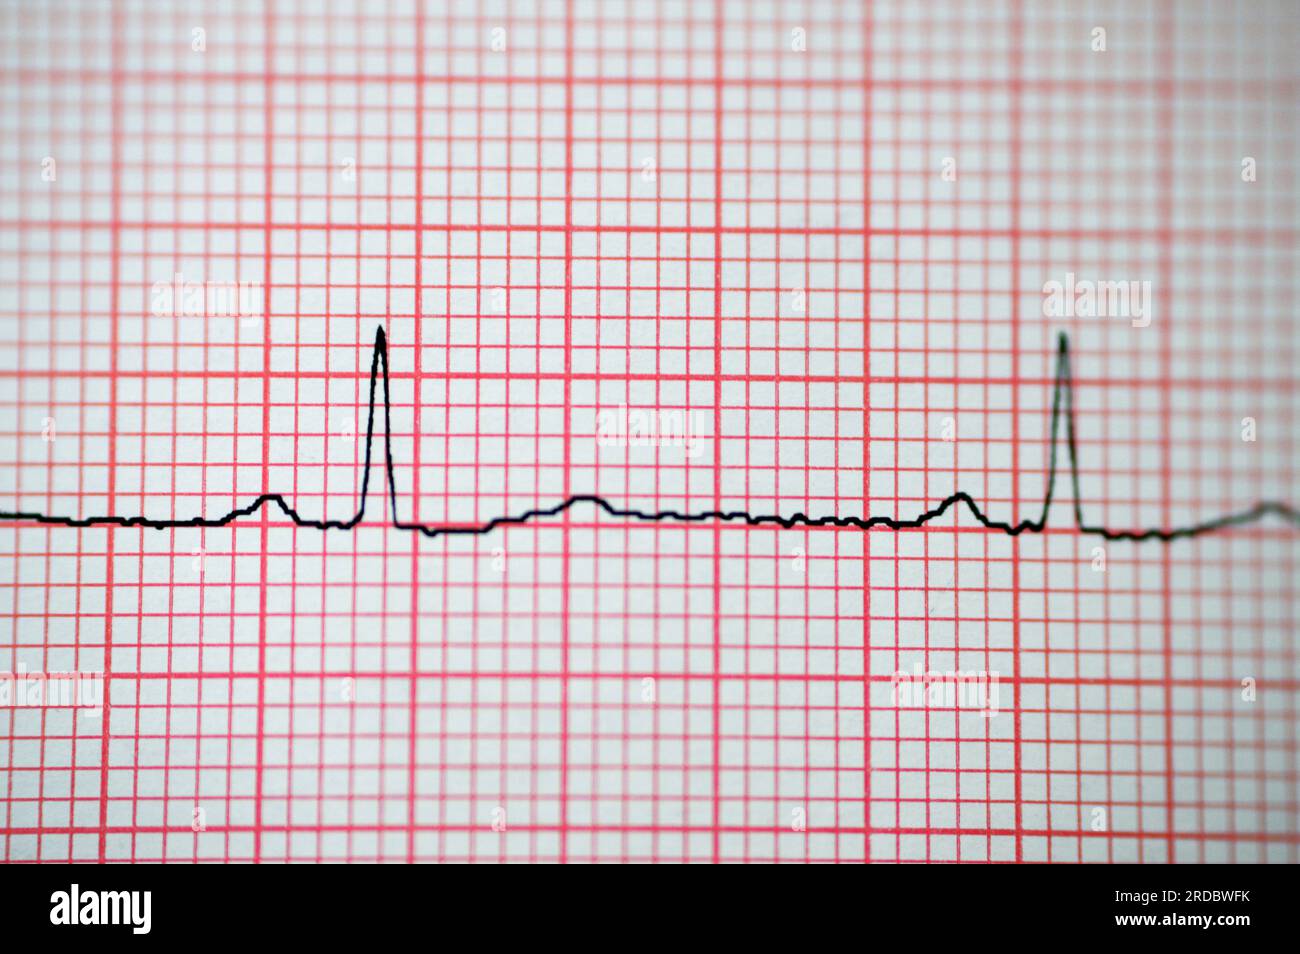 Papier électrocardiographique ECG montrant une anomalie du rythme sinusal d'hypertrophie ventriculaire droite, une onde T inférieure due à une hypertrophie et une ischémie, AB Banque D'Images